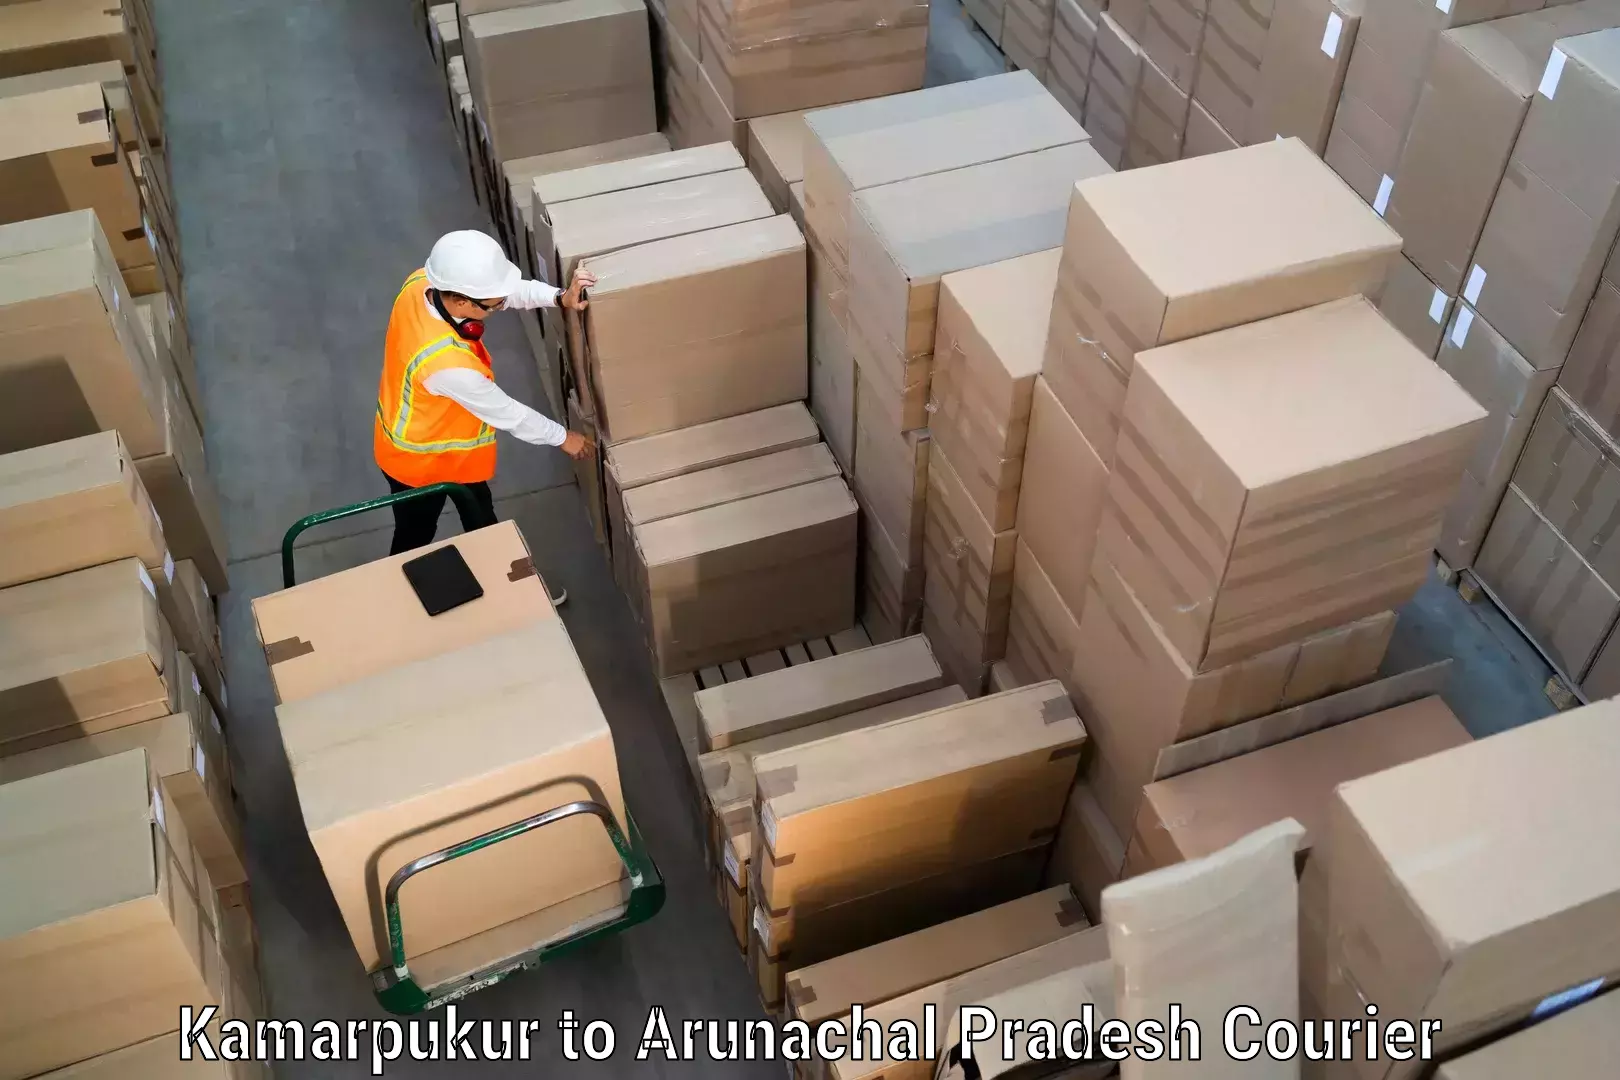 Courier service comparison Kamarpukur to Dirang